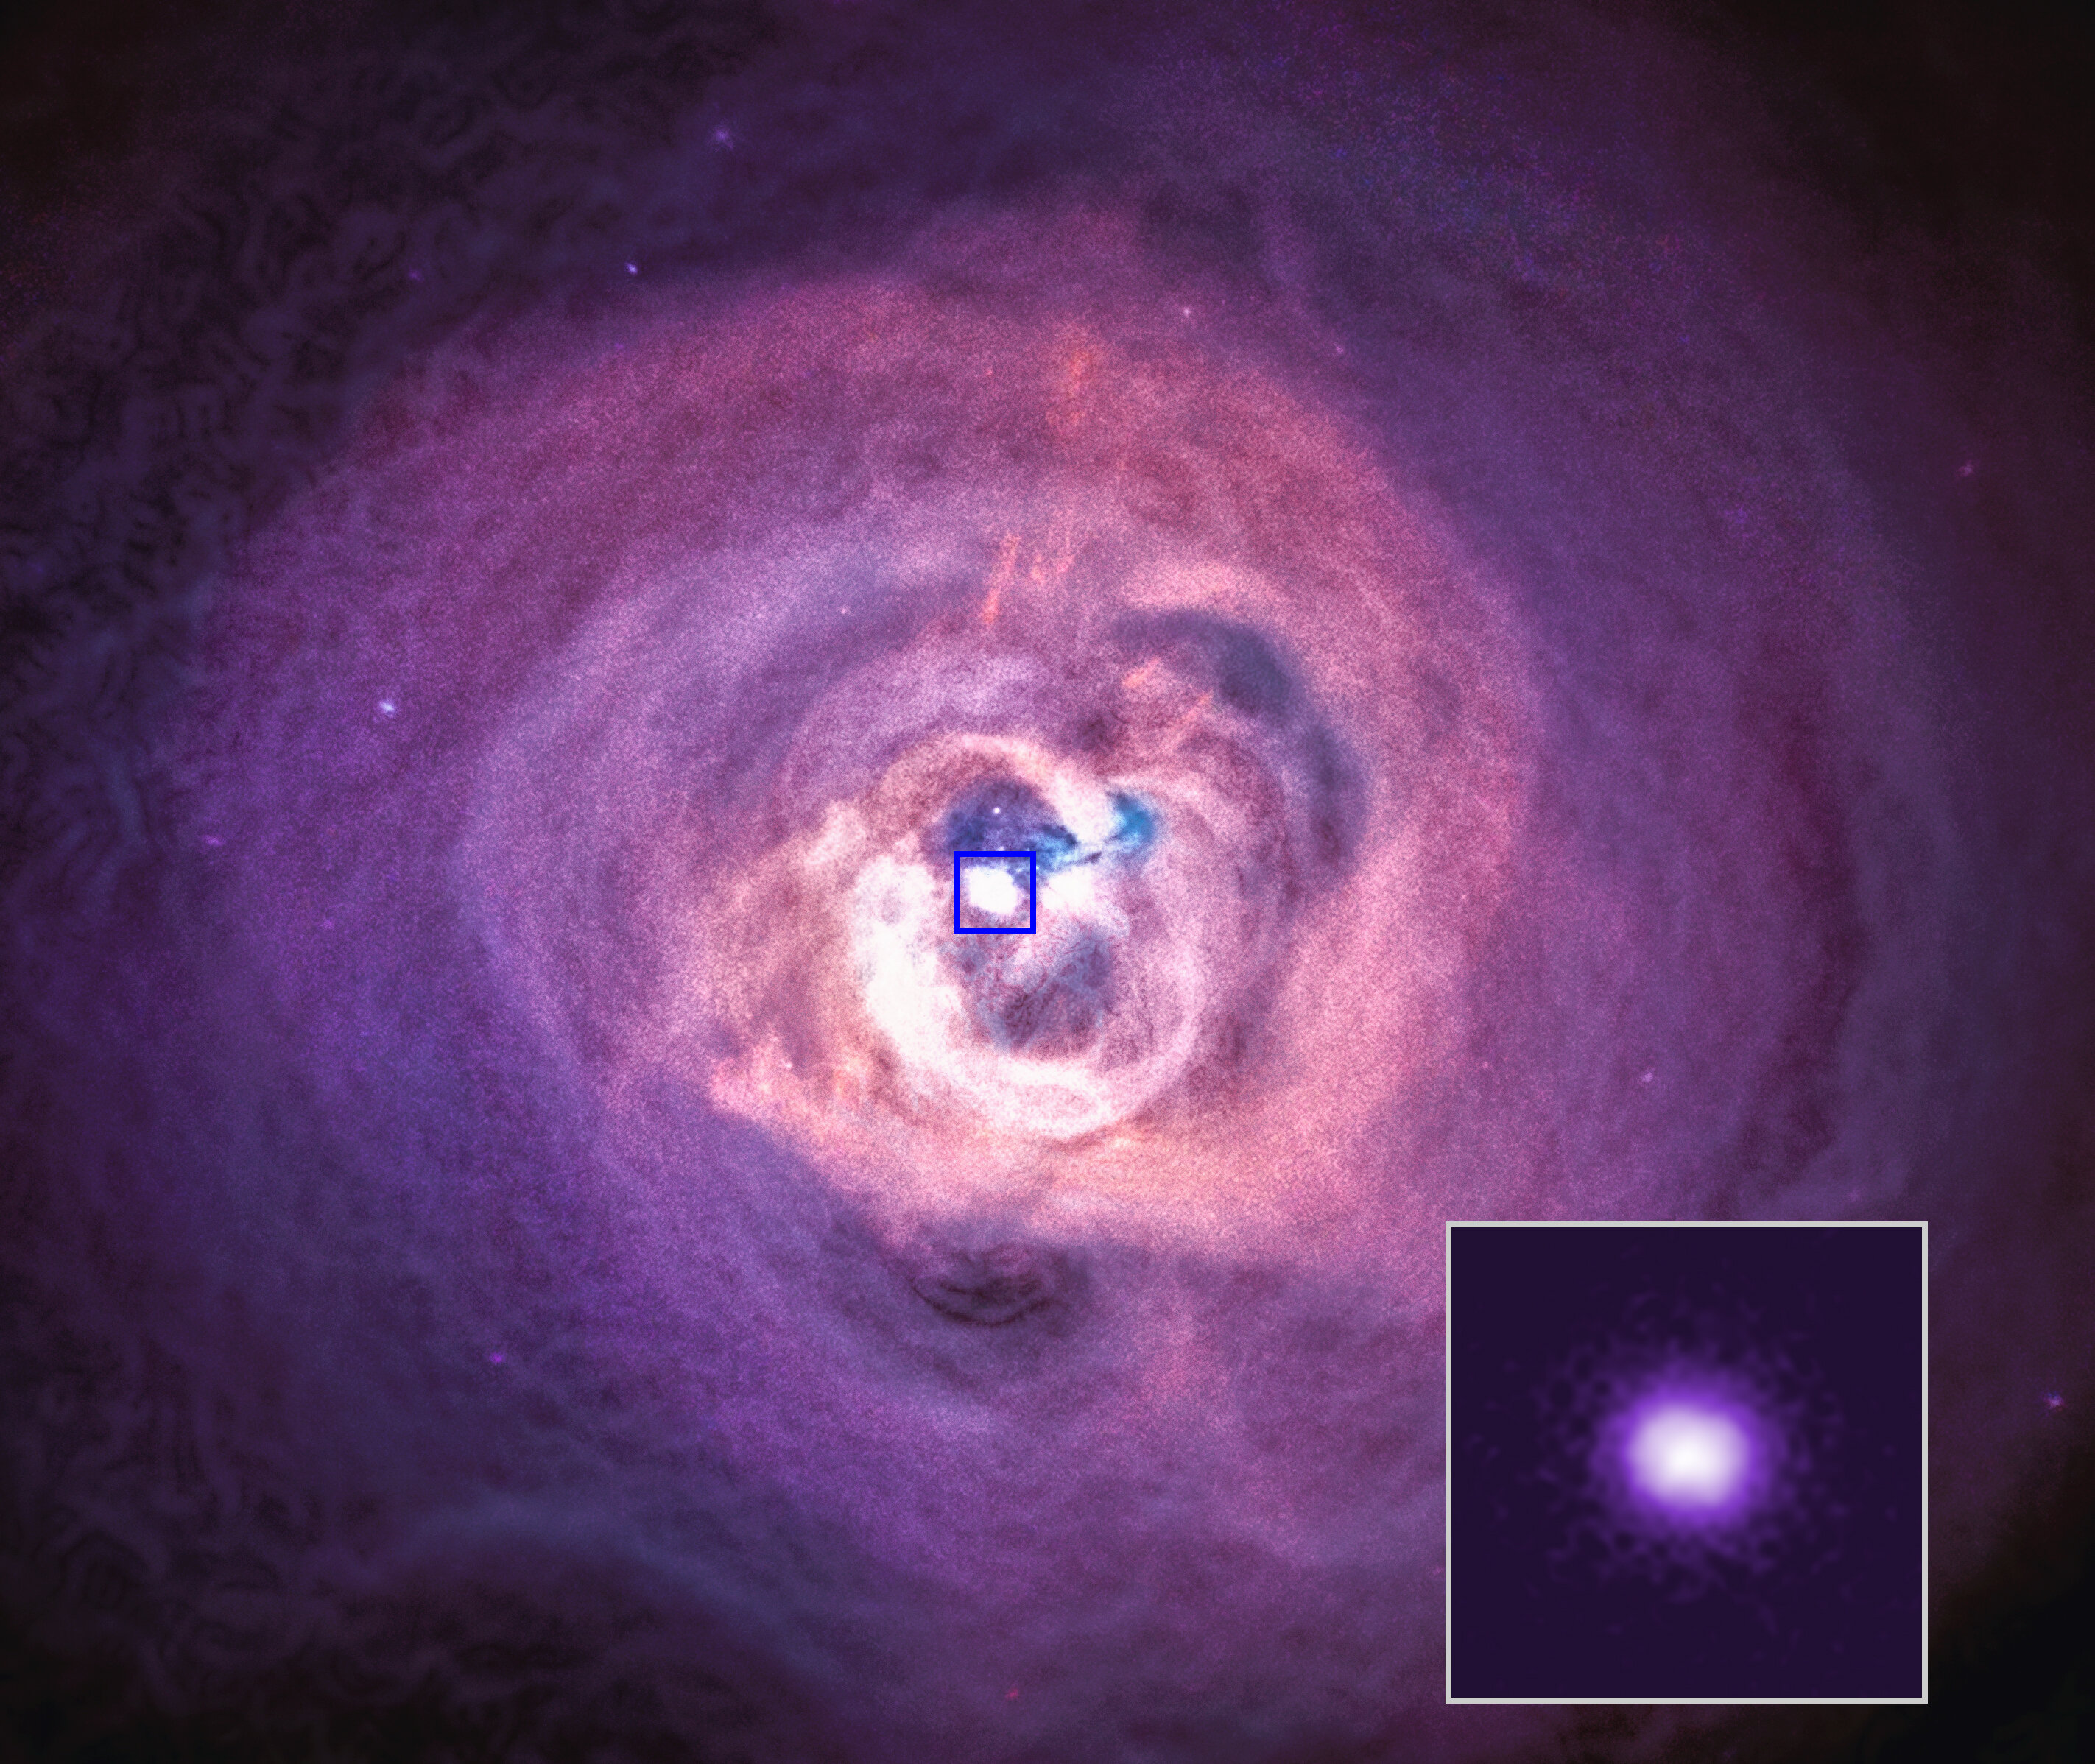 Supermasivní černé díra v centru kupy galaxií v Perseovi. Kredit: NASA/CXC/Univ. of Cambridge/C. Reynolds et al. 2020.